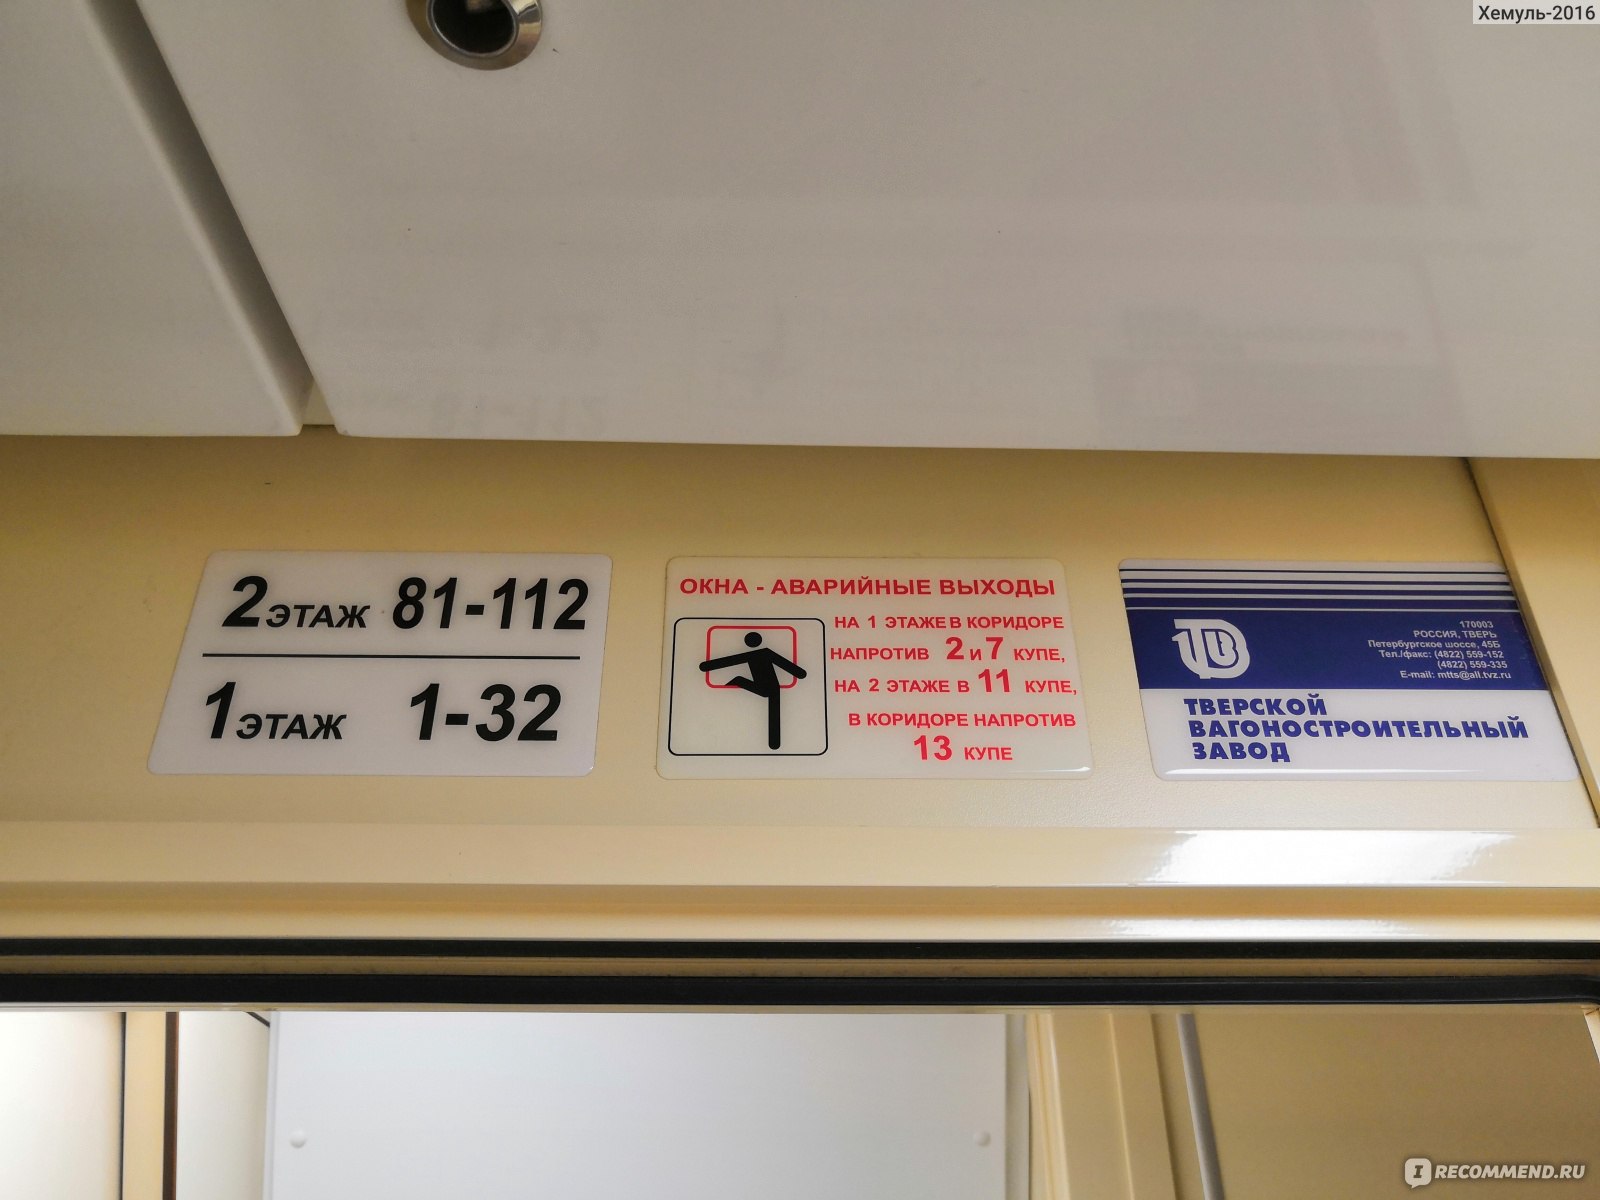 Нижние и верхние полки в поезде ржд нумерация